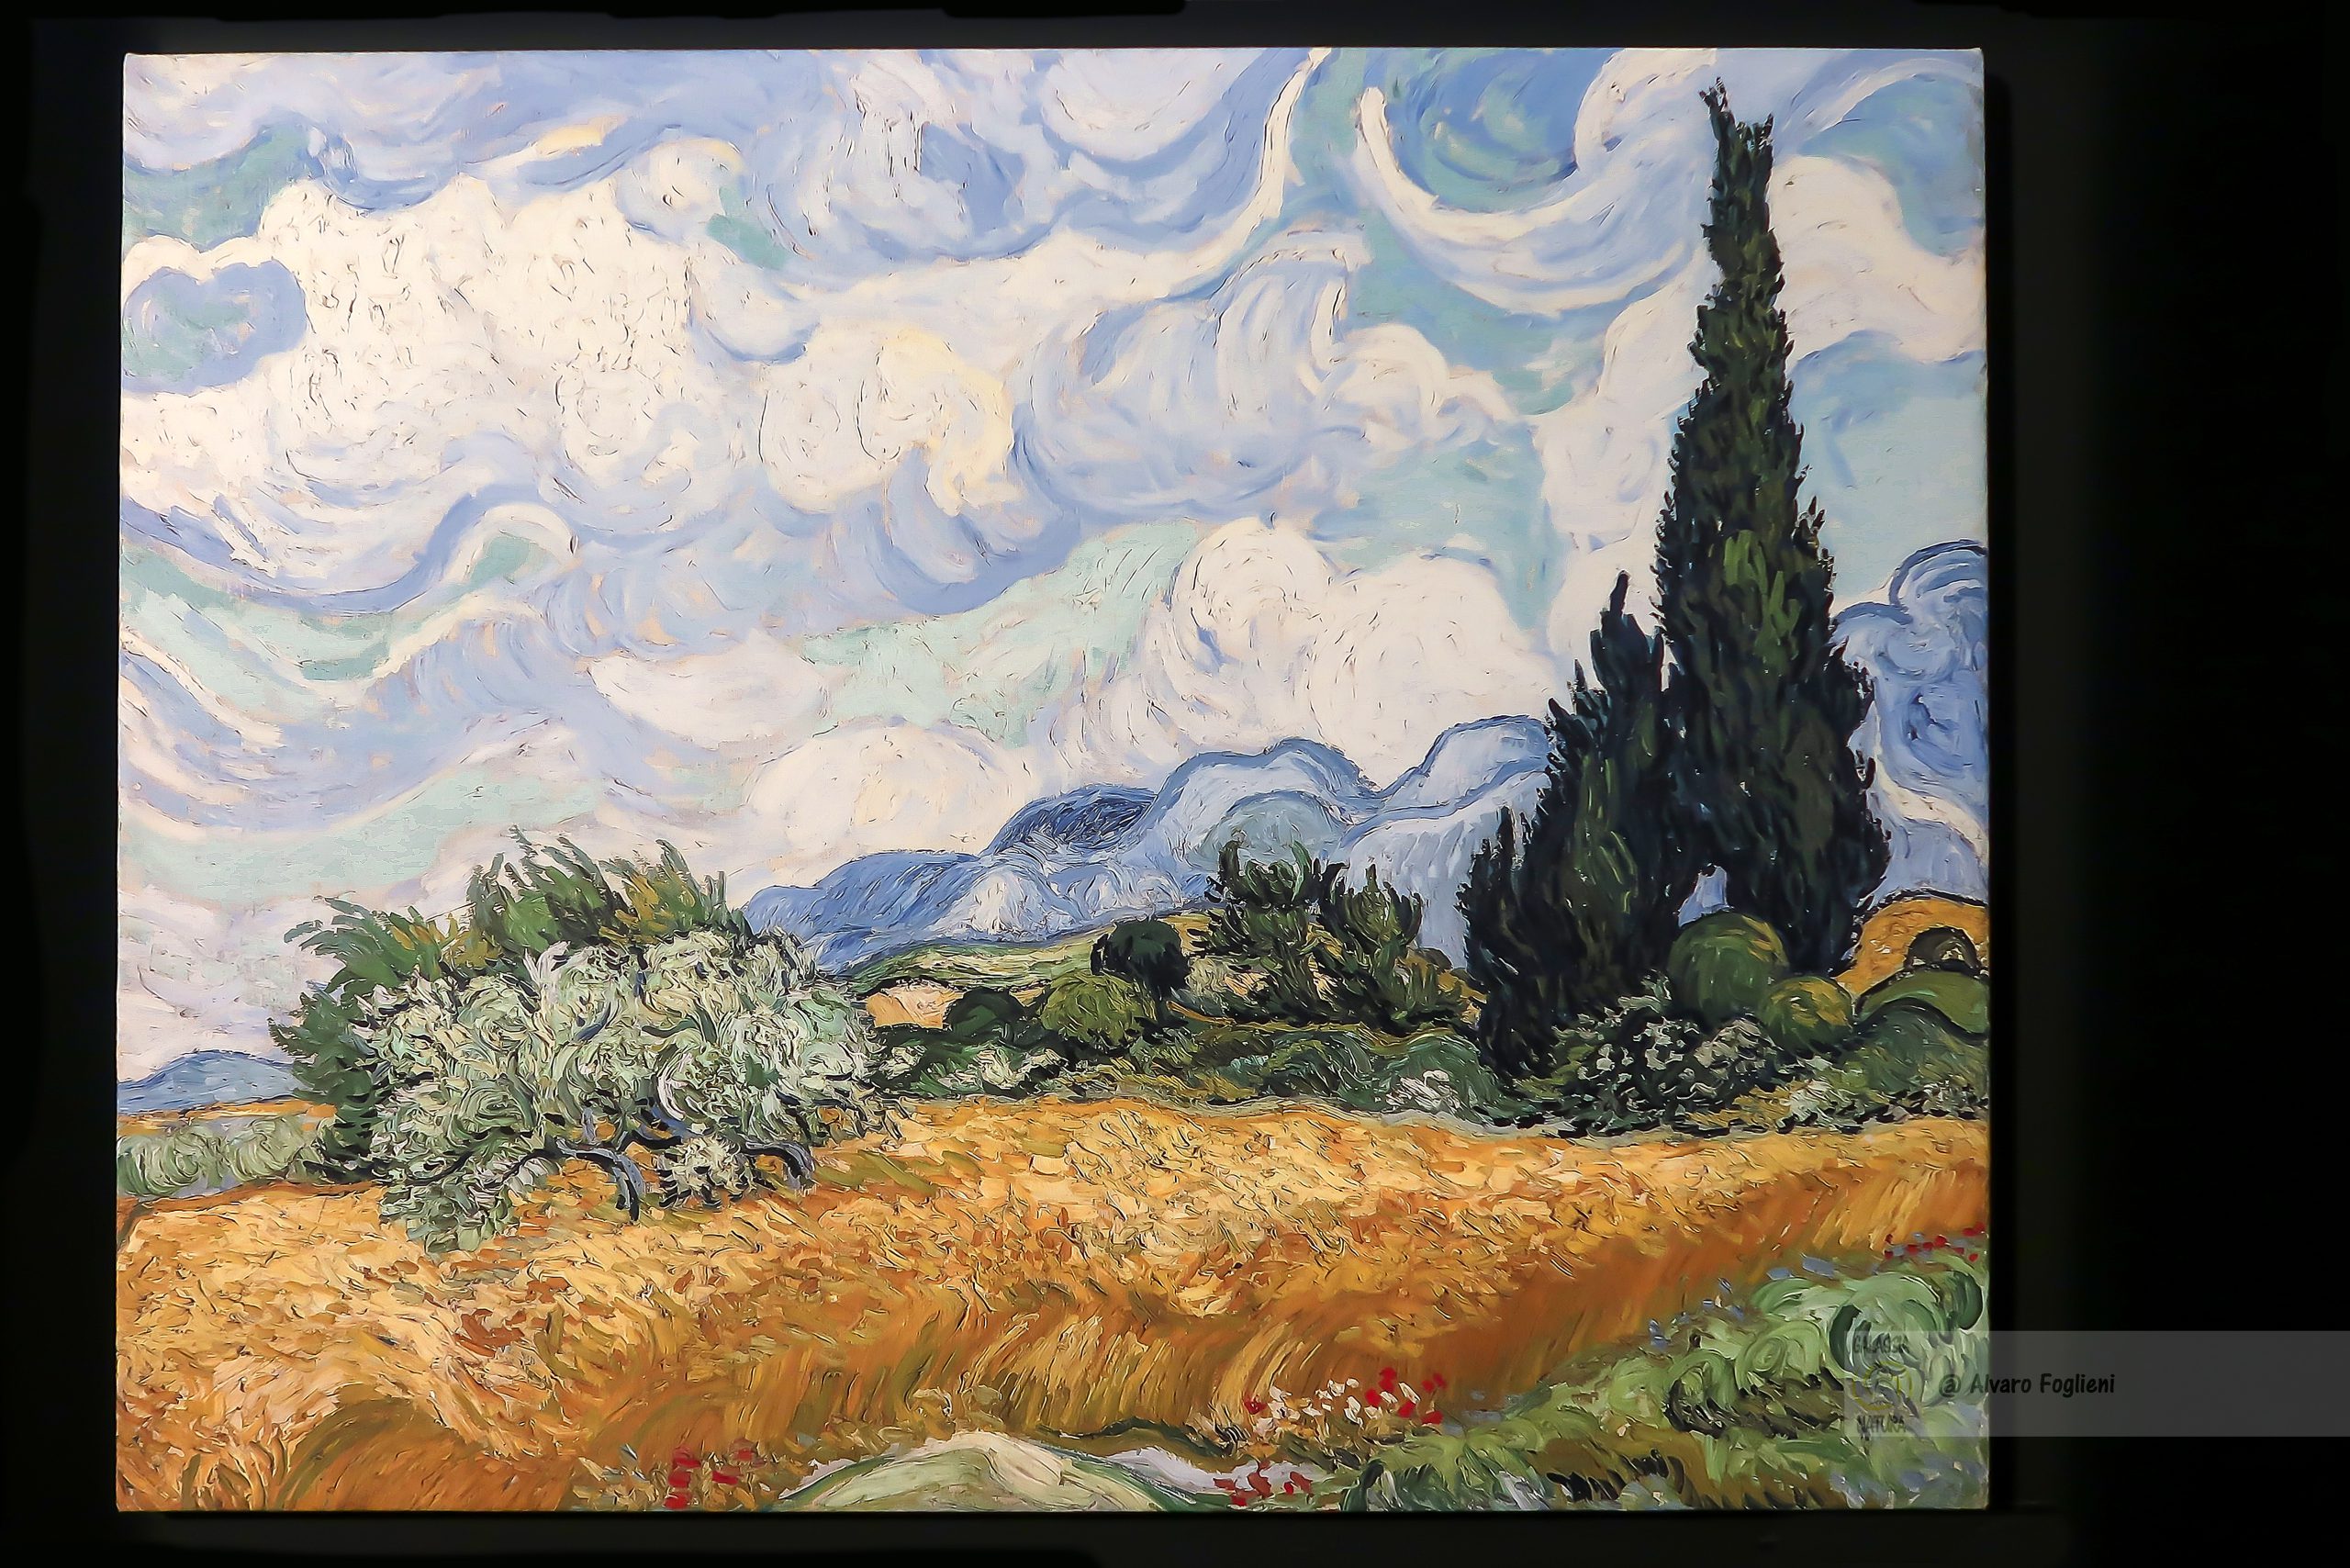 Cattura il movimento e l'energia come faceva Van Gogh con la "lunga posa"